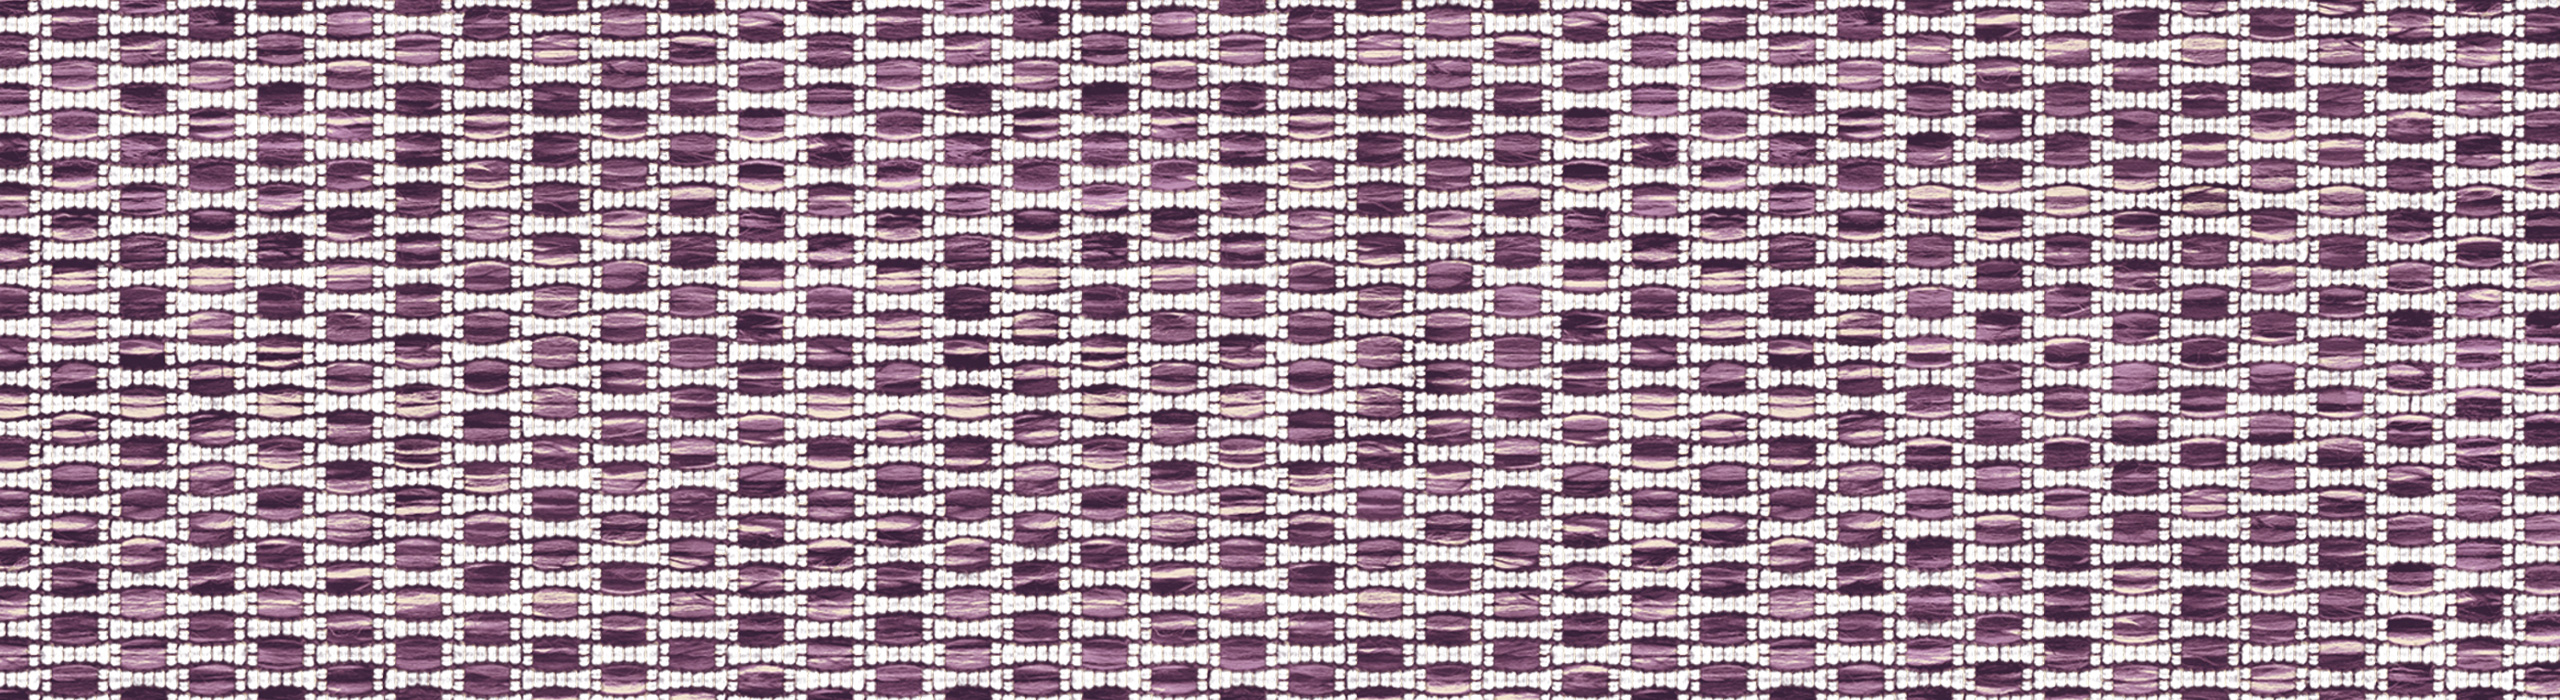 картинка 88283-2 Veluce 2018 Обои виниловые на бумажной основе 1.06*15.6 рисунок ткань цвет фиолетовый